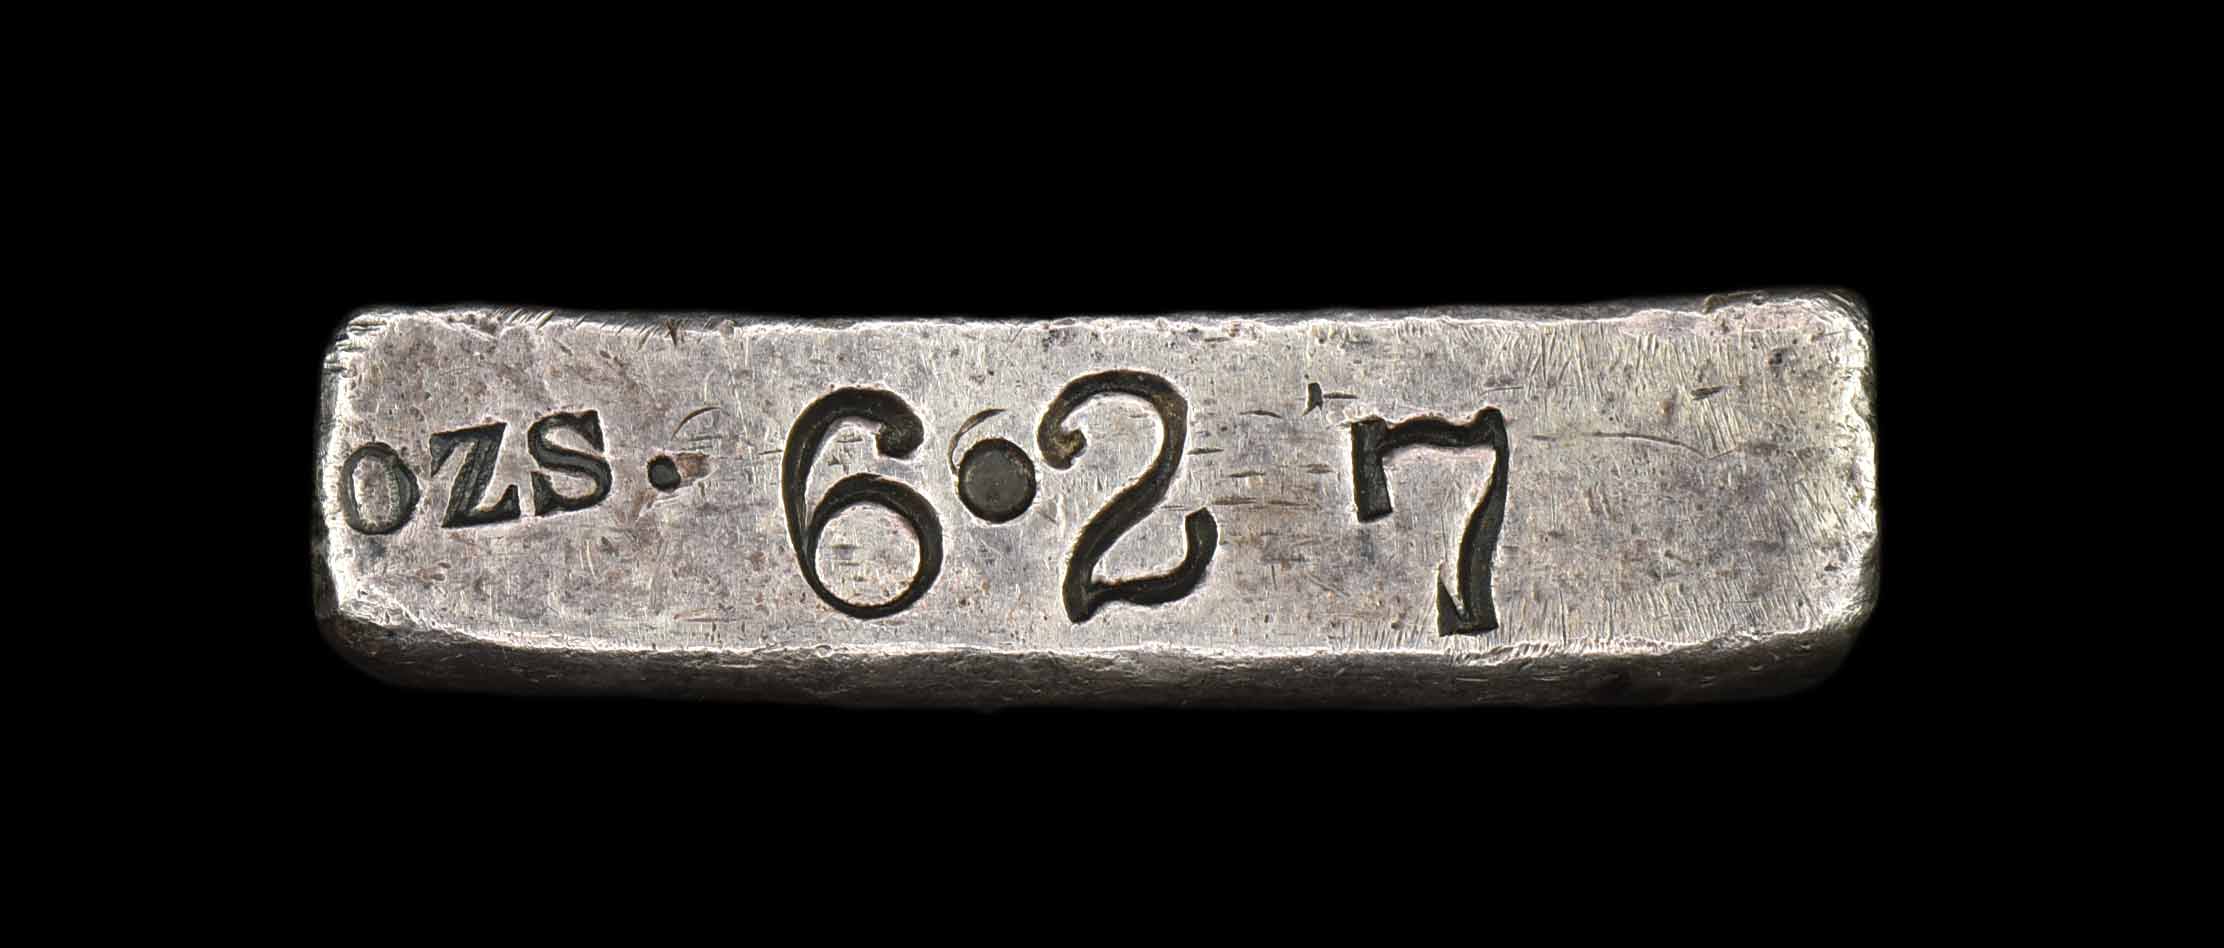 bryce 7 serial number